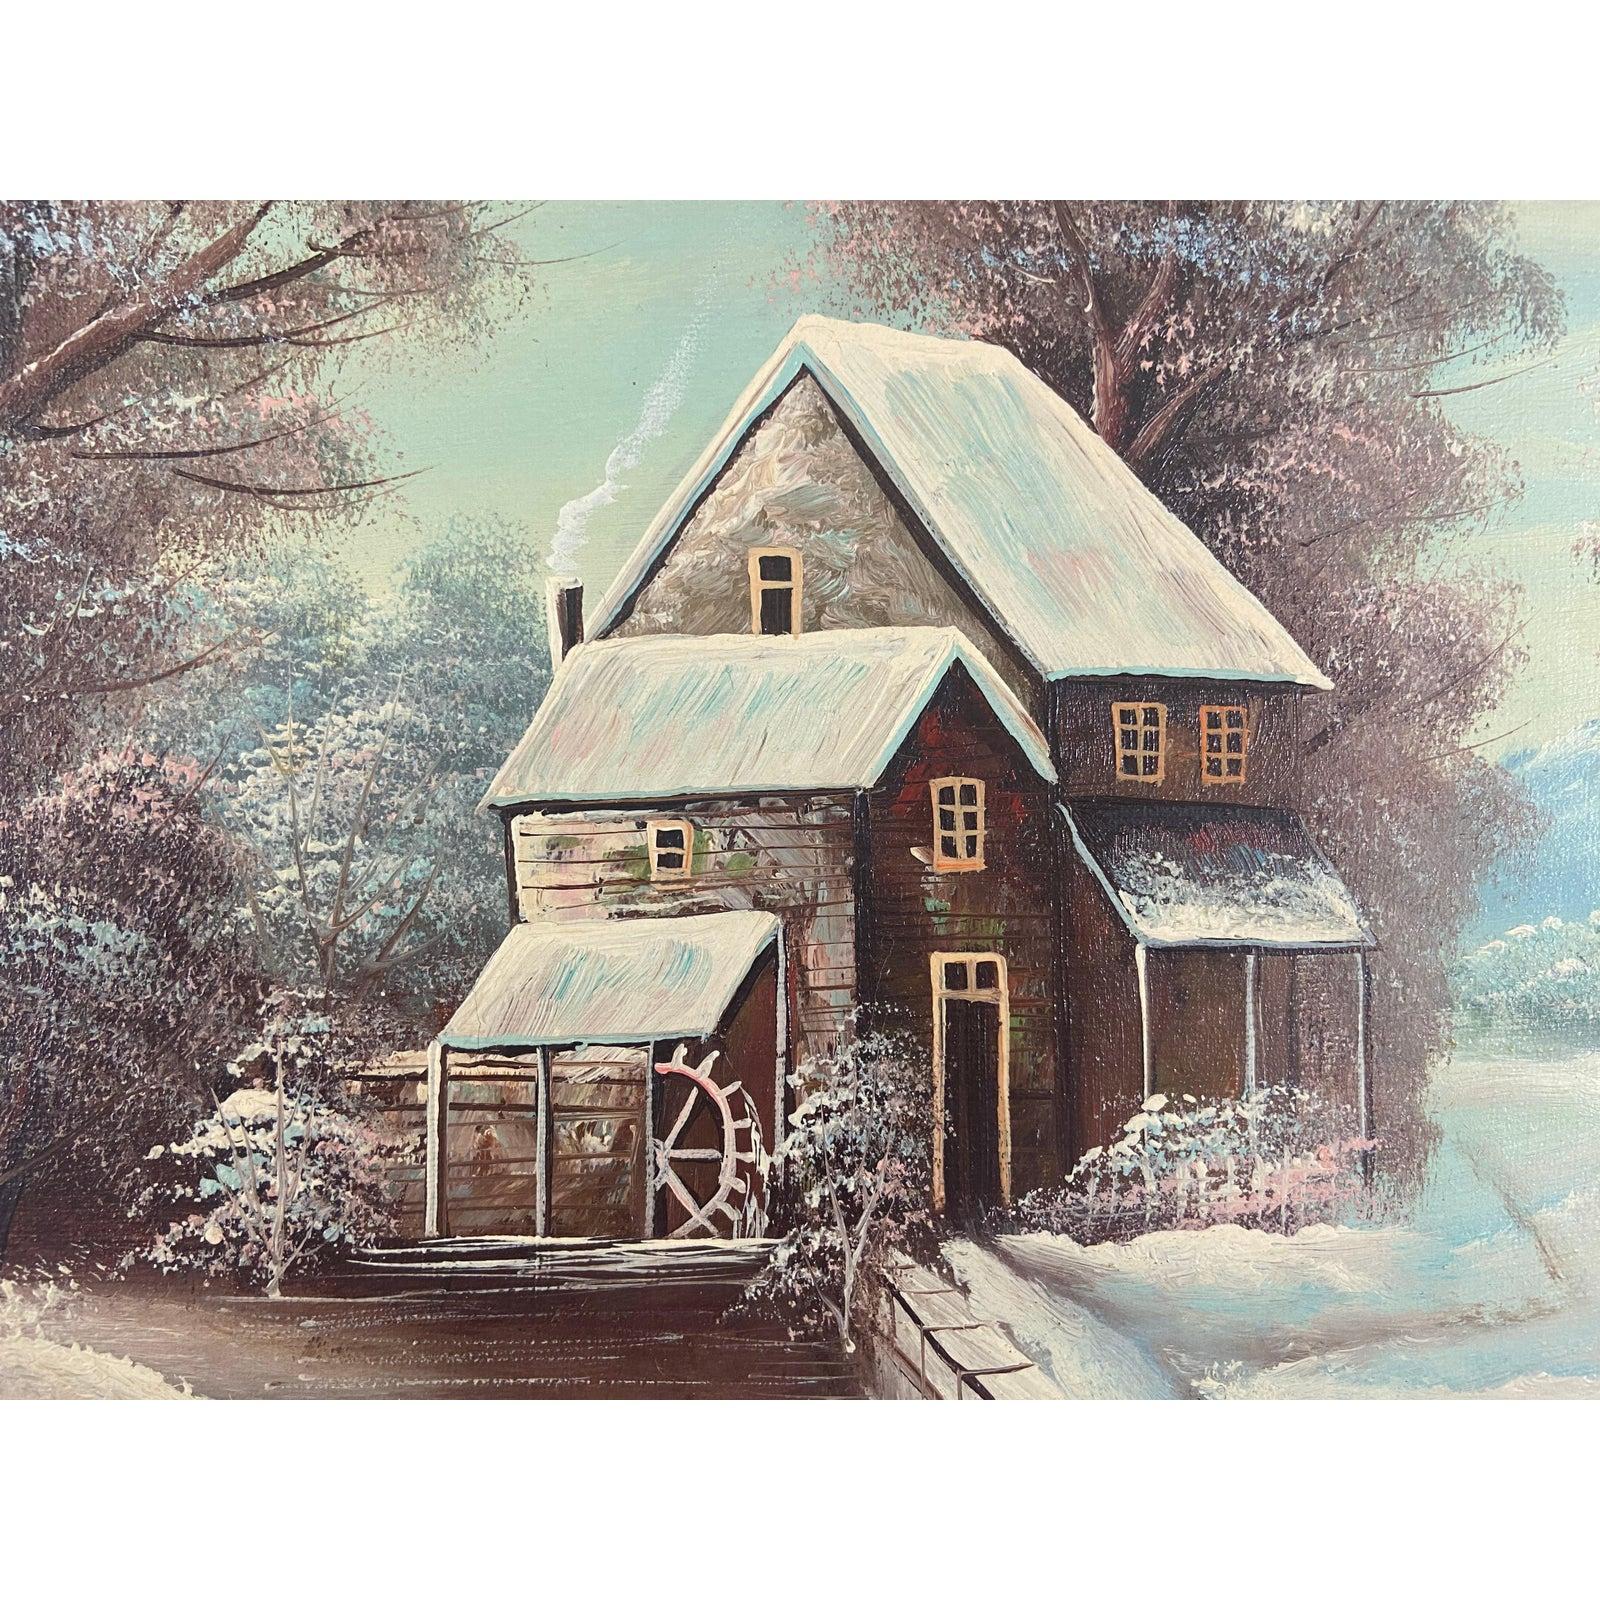 Eine verschneite Landschaftsszene von K.Bernath. Die verschneite Tagesszene zeigt ein Haus / eine Hütte inmitten des verschneiten Waldes mit blauem Himmel. Das Gemälde ist gerahmt. 

Abmessungen
Gerahmt: 17,75